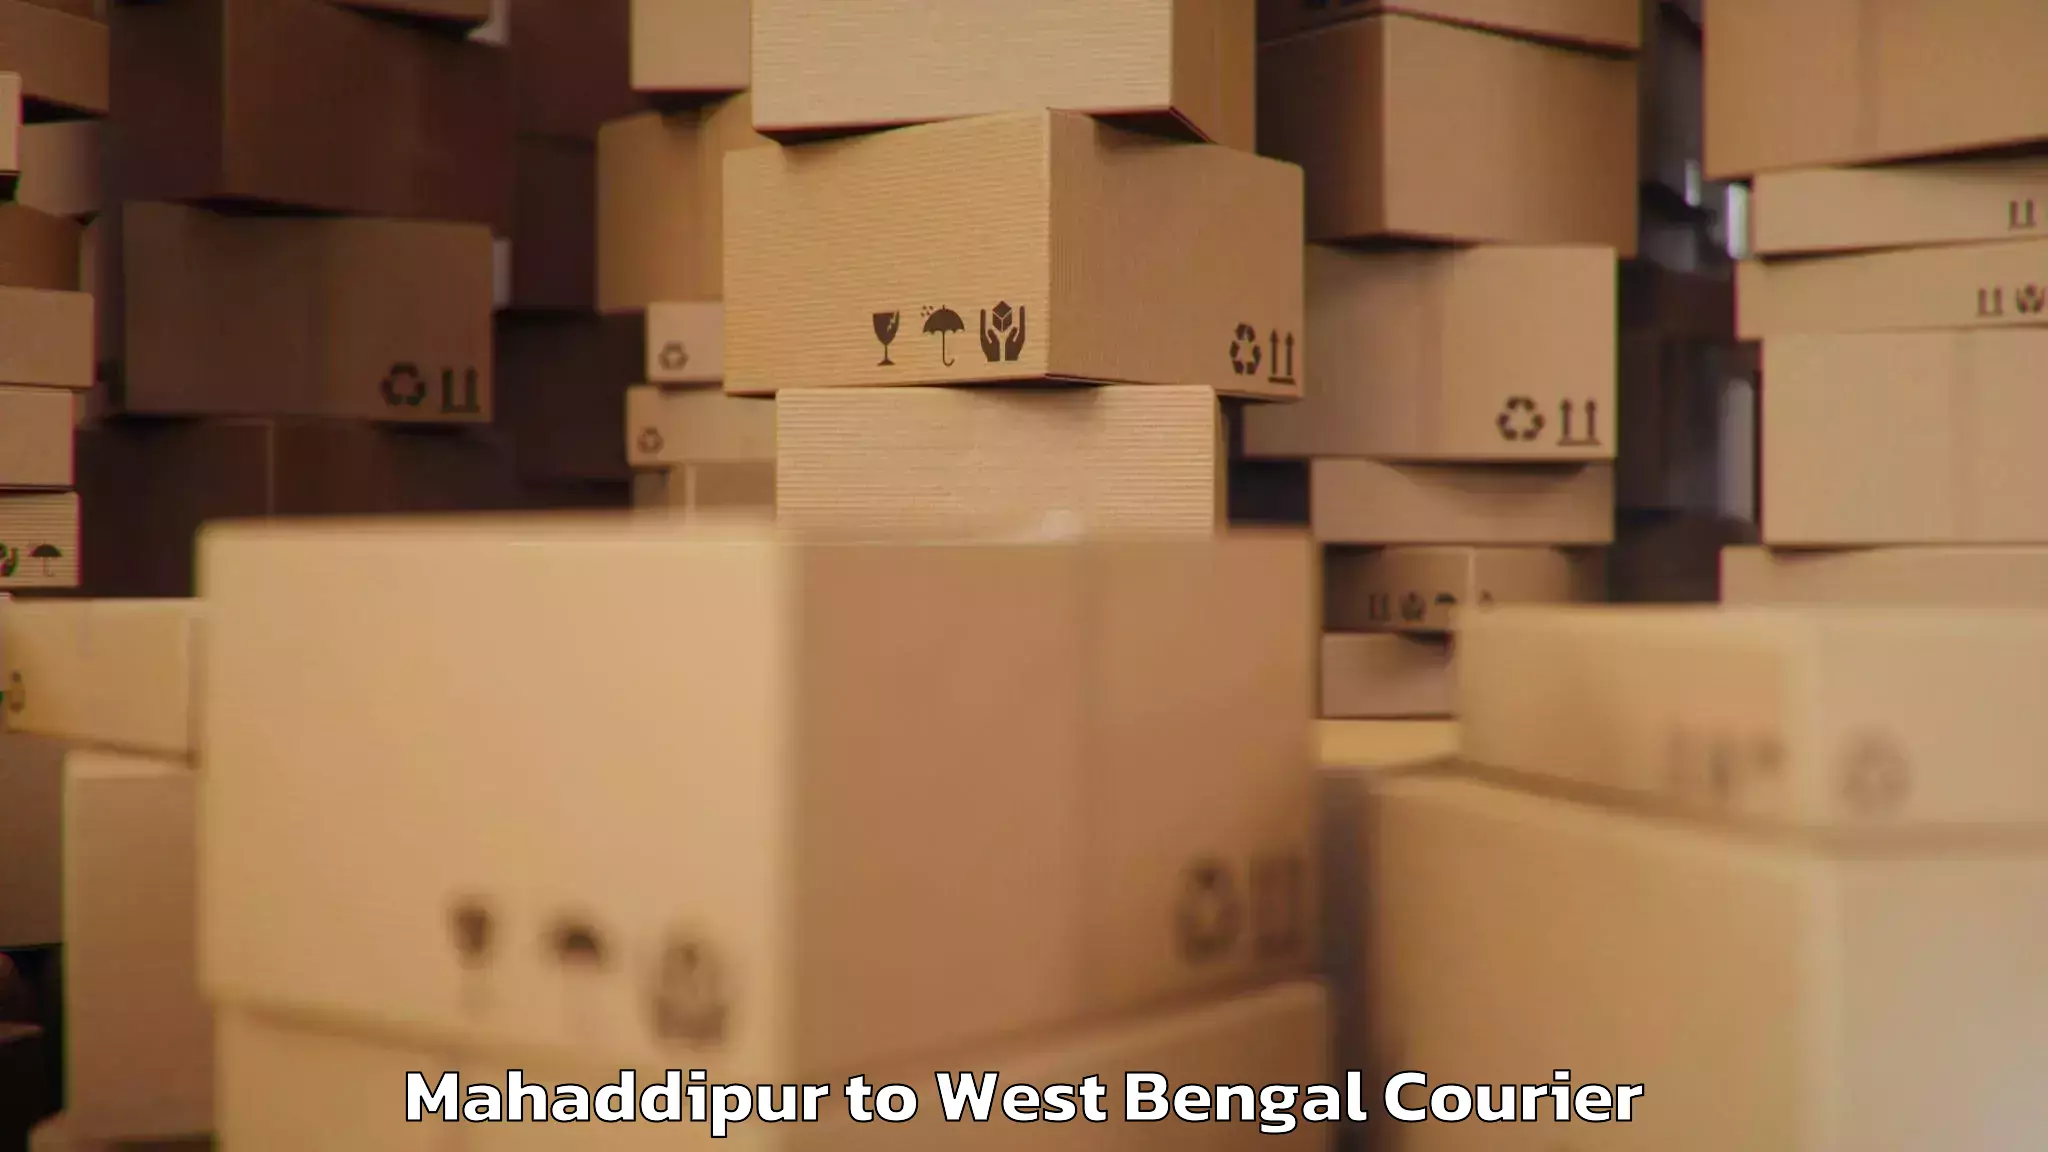 Baggage courier rates Mahaddipur to Kolkata Port